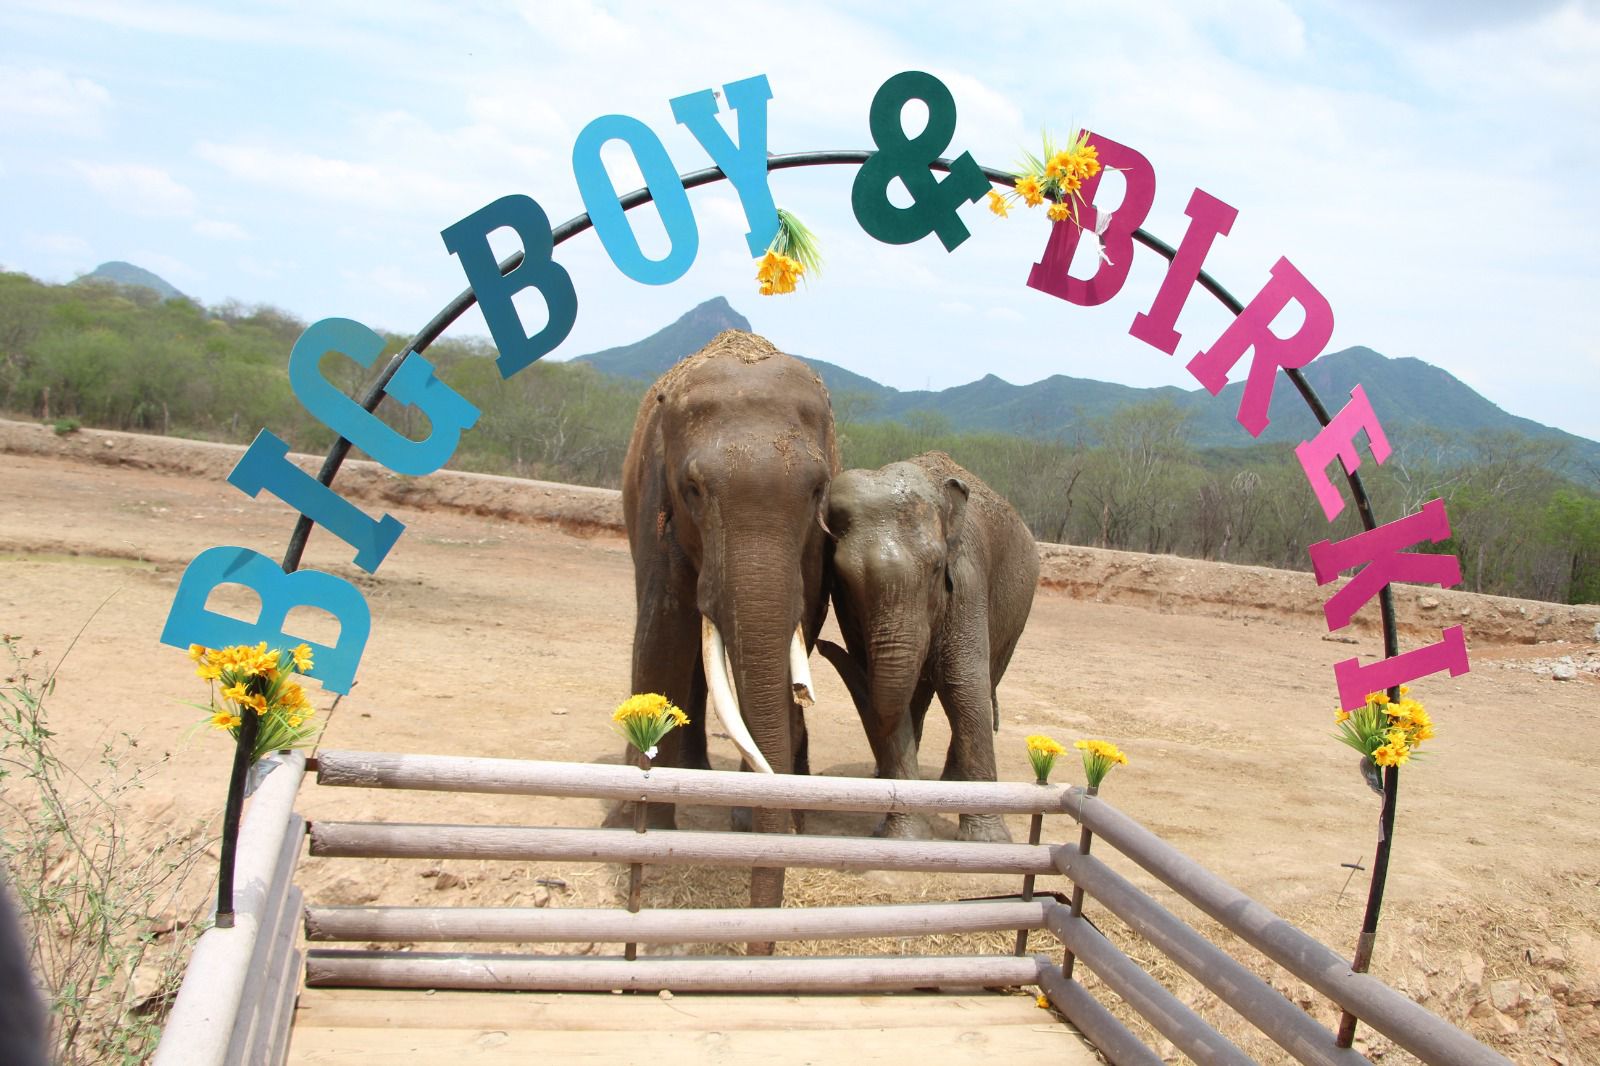 Con esta simbólica boda estos dos elefantes tienen una nueva oportunidad de vida